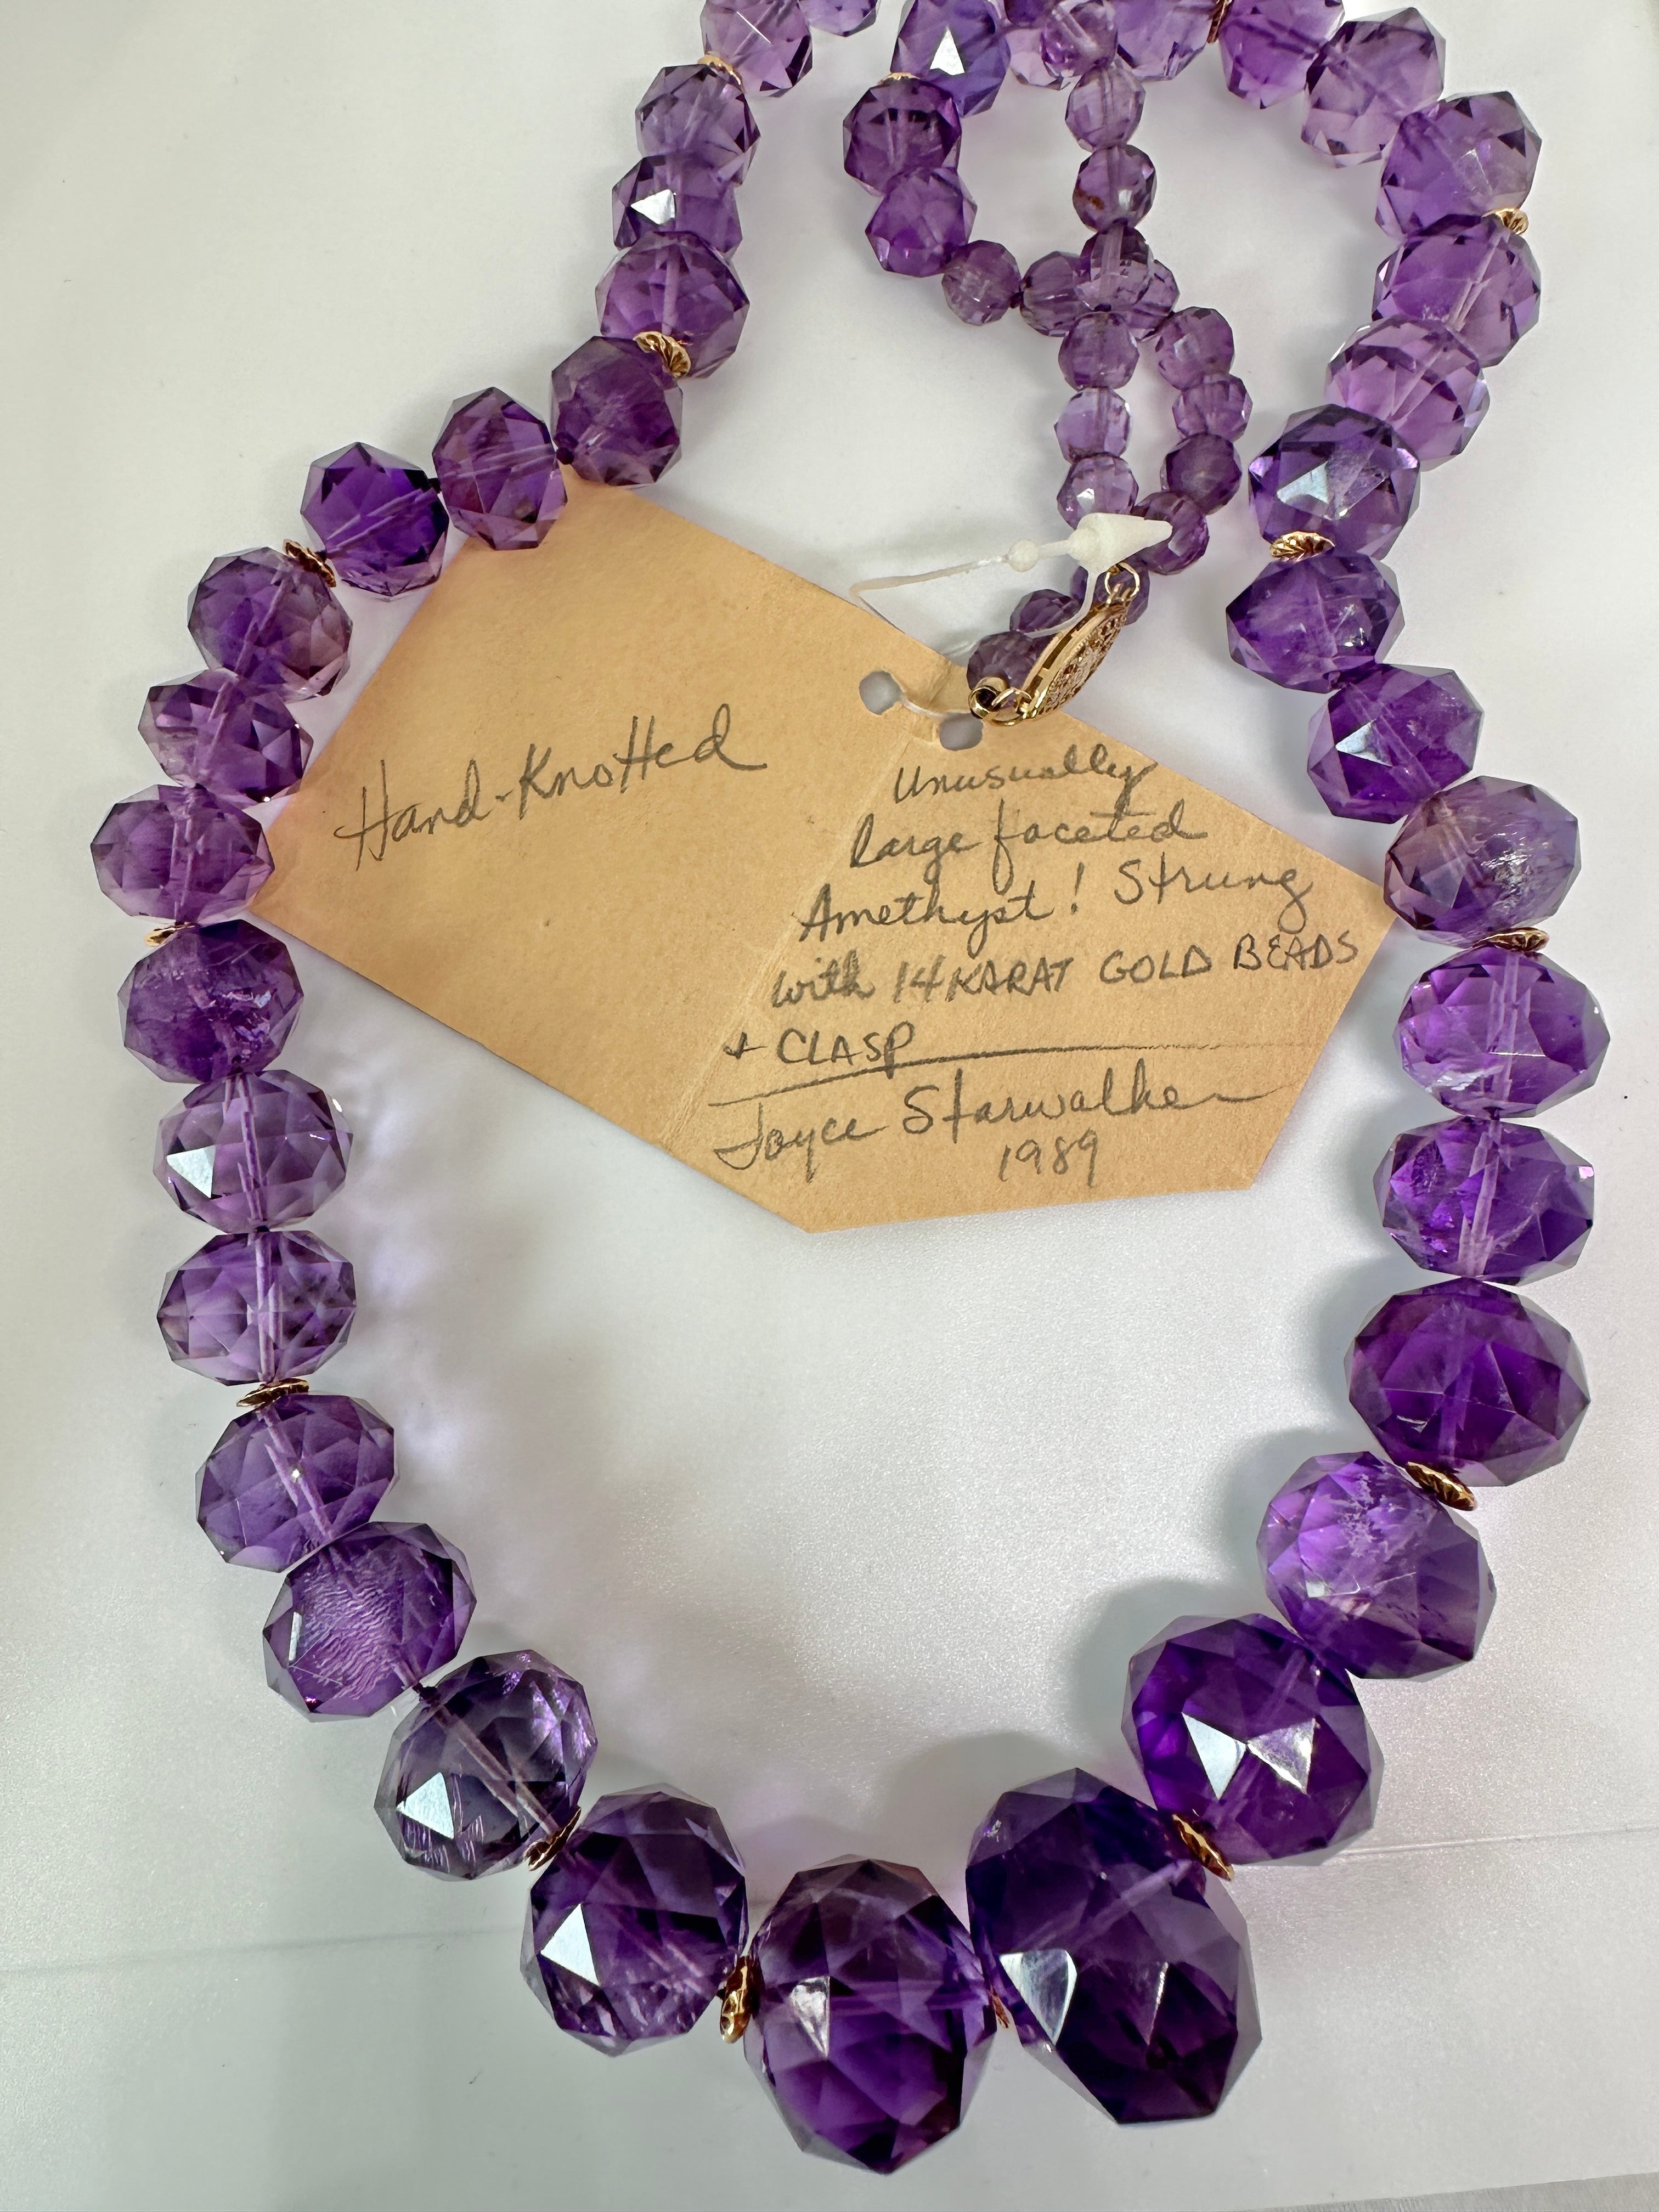 Dies ist eine spektakuläre 26,5 Zoll Amethyst Perlenkette mit 14 Karat Gelbgold Spacer Perlen und Verschluss.  Die Halskette ist ein Meisterwerk der indianischen Künstlerin Joyce Starwalker und die Kette trägt ihr Originaletikett von 1989.  Die